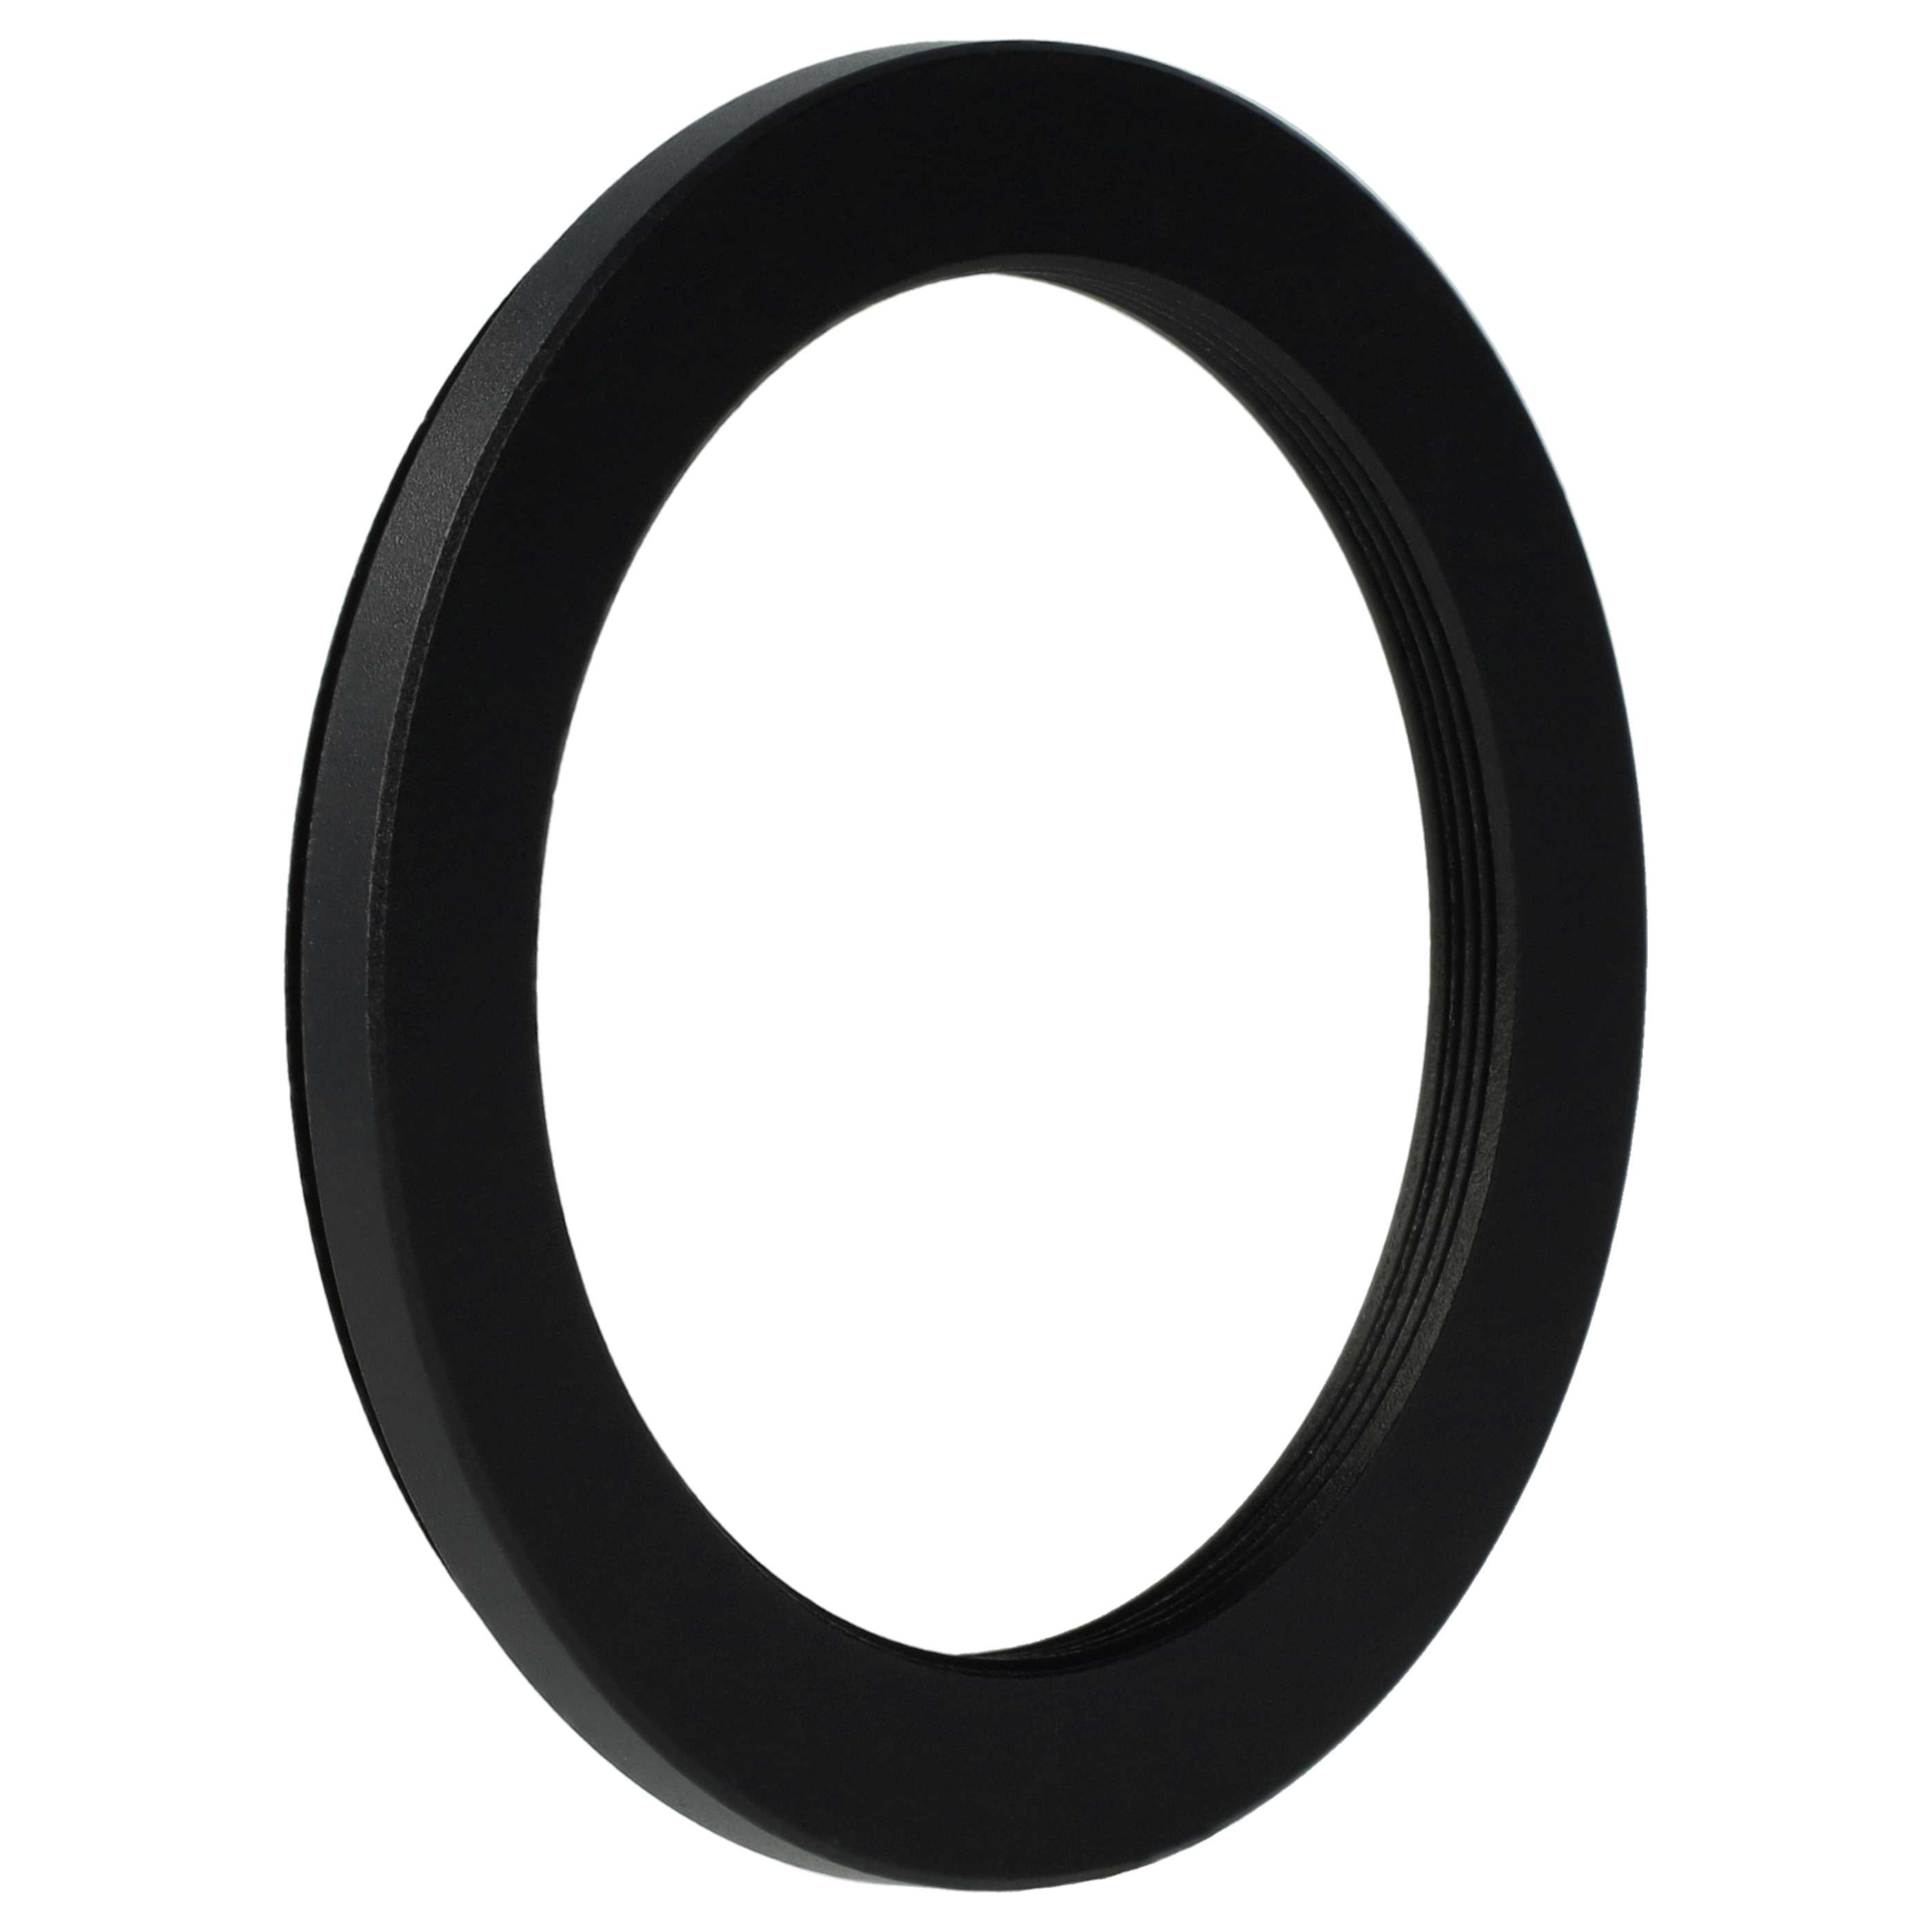 Redukcja filtrowa adapter Step-Down 58 mm - 46 mm pasująca do obiektywu - metal, czarny